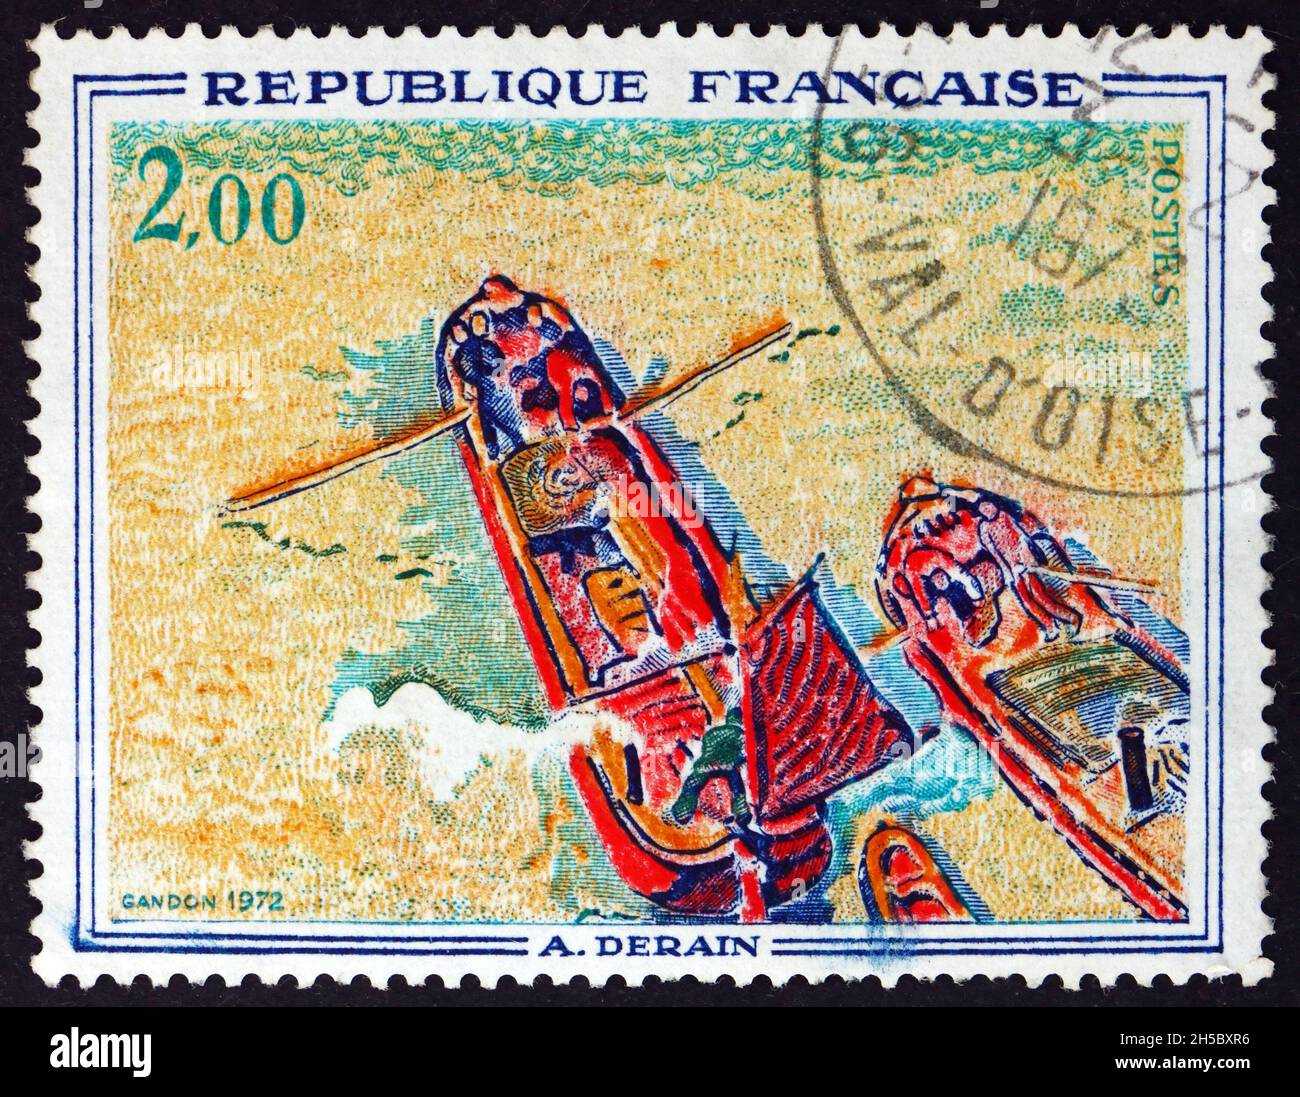 FRANCE - VERS 1972 : un timbre imprimé en France montre des bateaux, peinture d'André Derain, peintre français, vers 1972 Banque D'Images